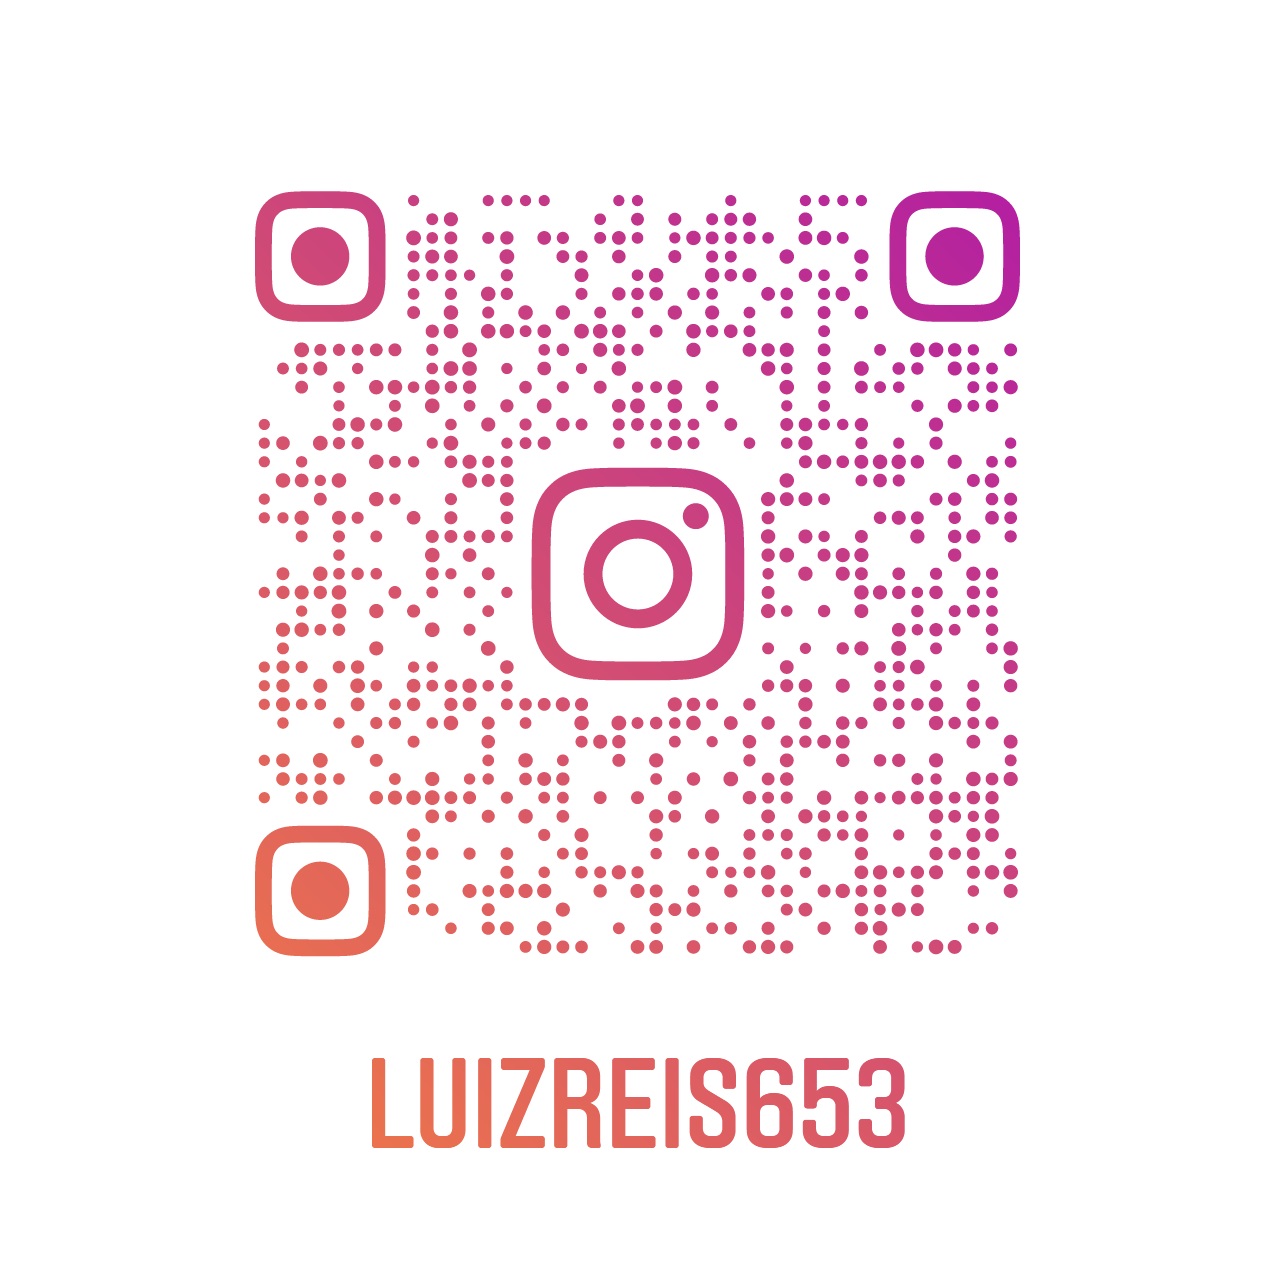 Visite nosso Instagram clique no QR Code